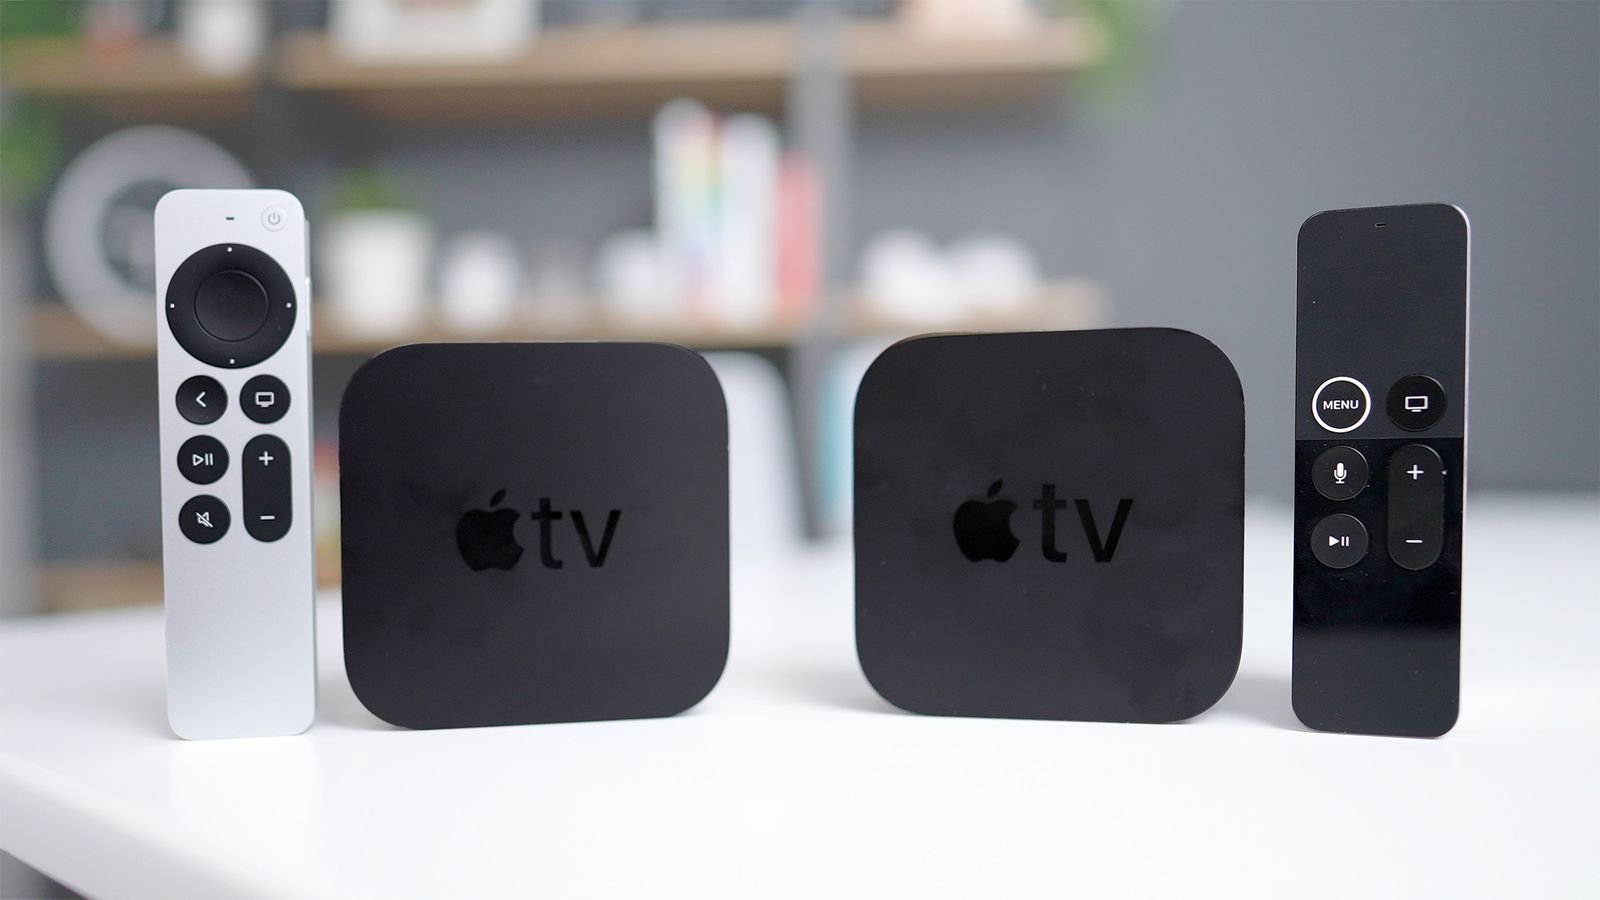 erwt raket kool 2021 Apple TV 4K vs. 2017 Apple TV 4K: Is It Worth Upgrading? - MacRumors